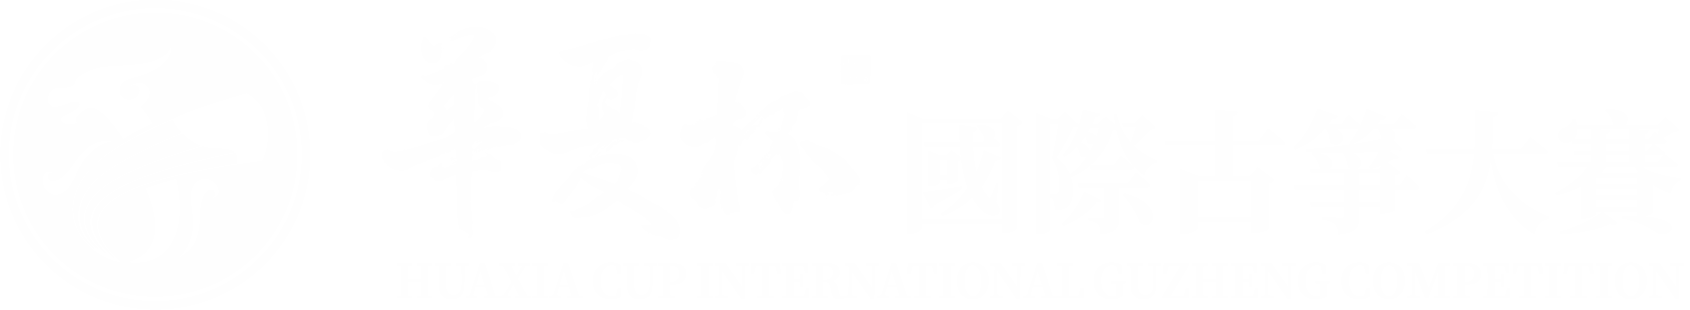 華夏杯國際古箏大賽